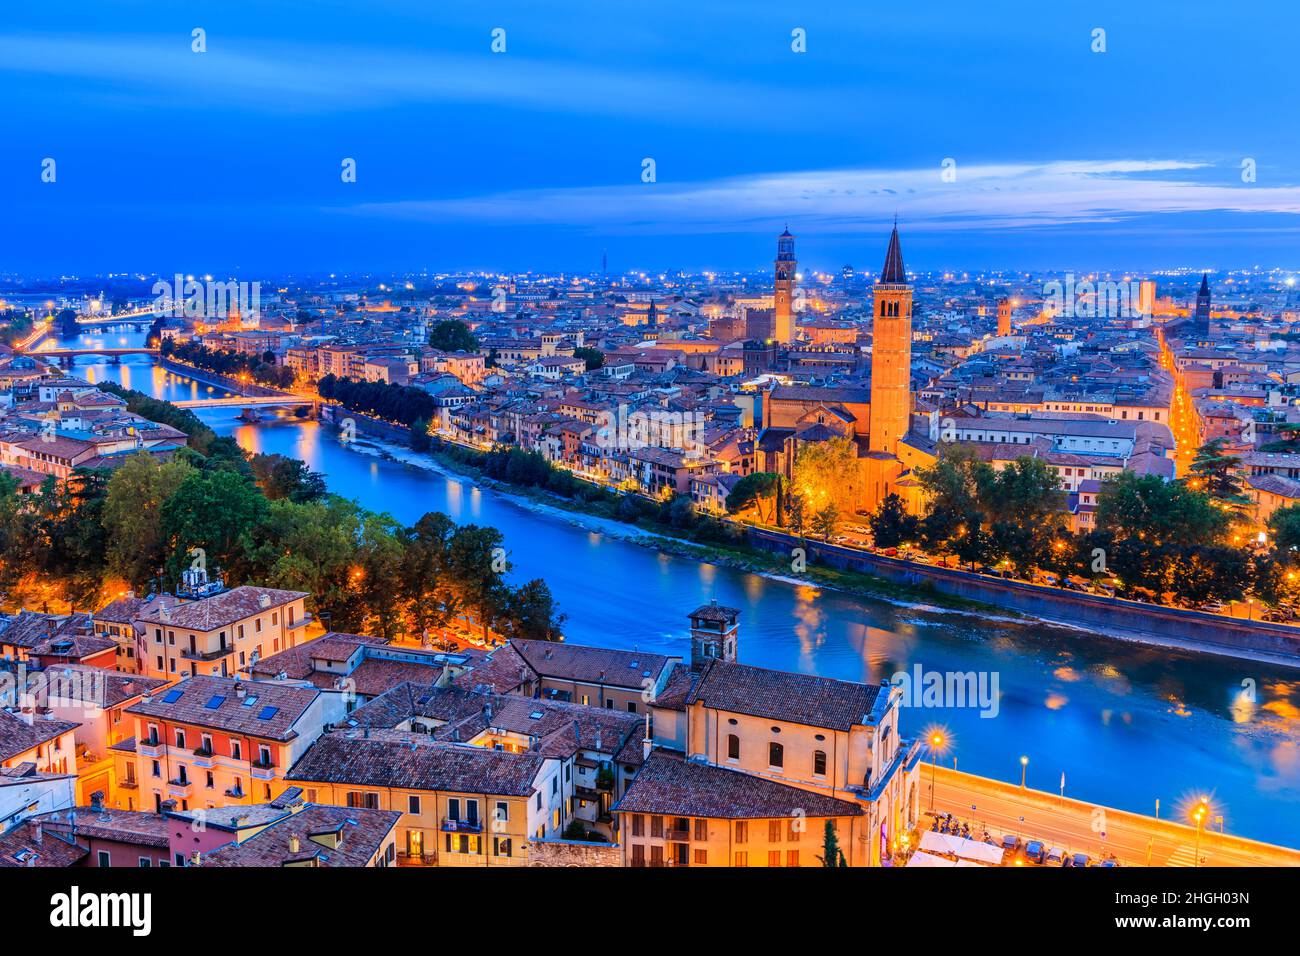 Vérone, Italie.Vue sur la vieille ville de Vérone et l'Adige au crépuscule. Banque D'Images